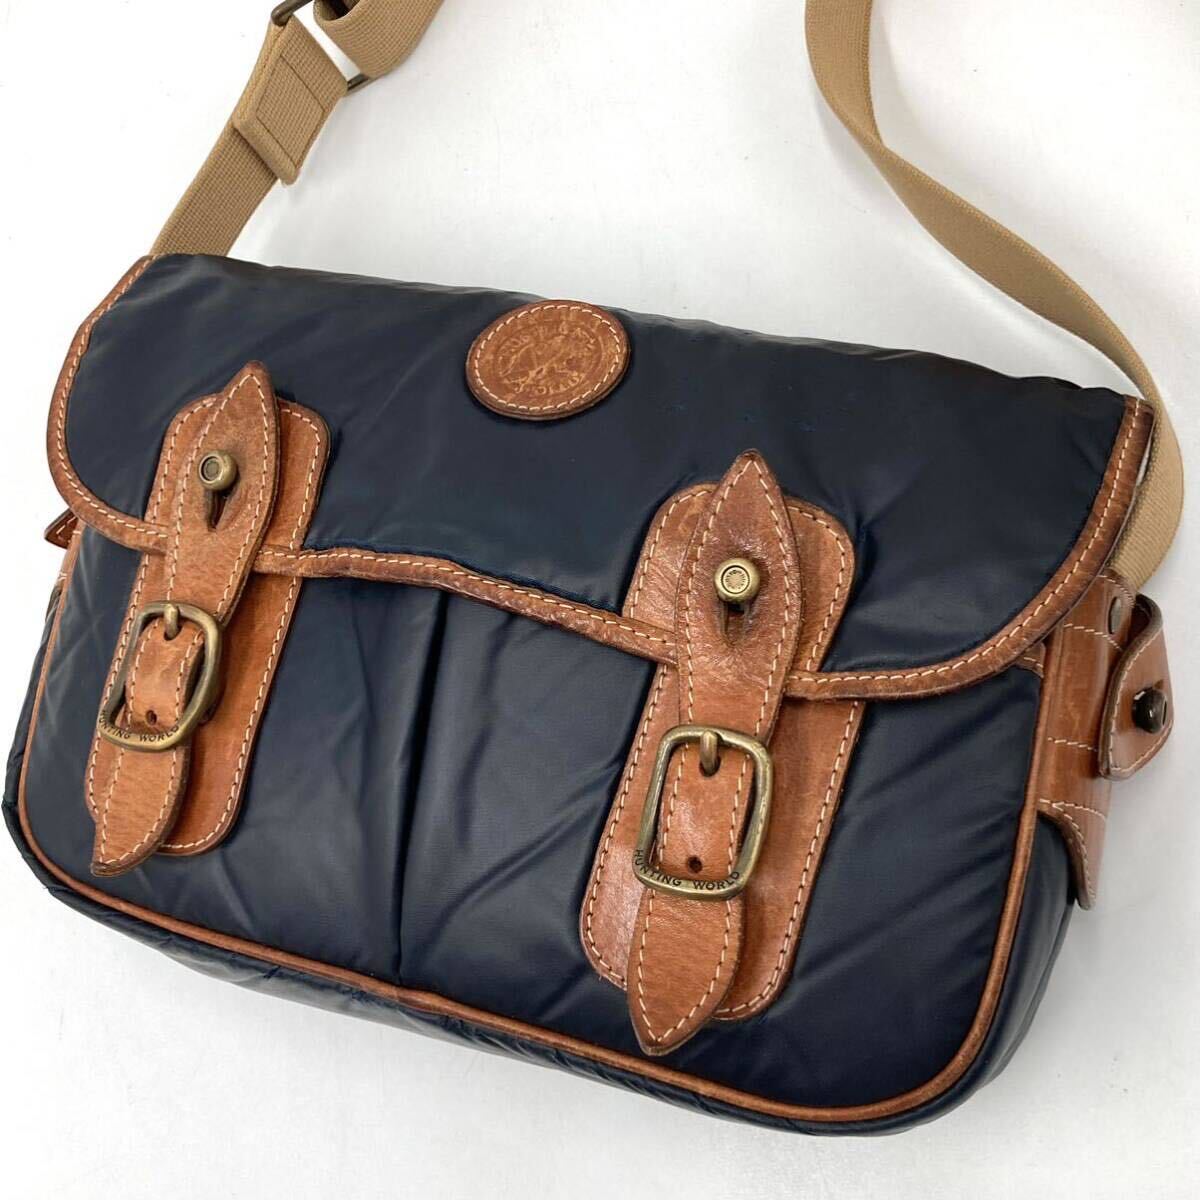 1 jpy [ hard-to-find ] Hunting World HUNTING WORLD messenger bag shoulder bag chopsticks .- Cross leather original leather men's business 